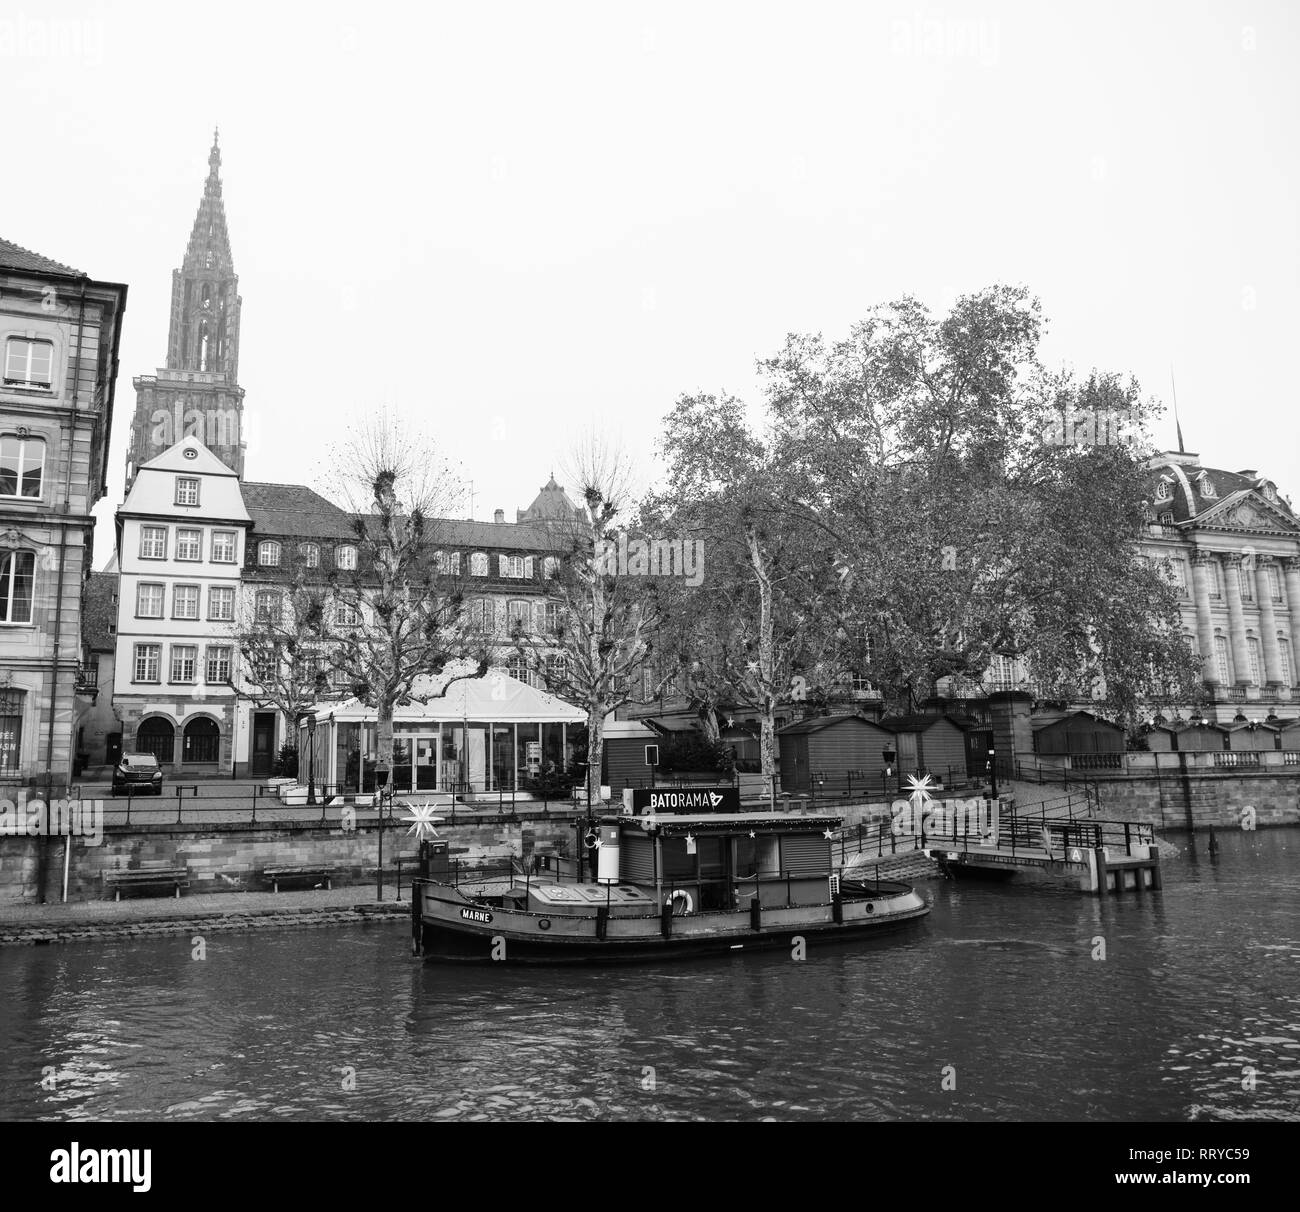 Straßburg, Frankreich - Dec 11, 2018: Batorama tourist boat Service mit keine Touristen nach dem Terroranschlag in der Straßburger Weihnachtsmarkt - Schwarz und Weiß Stockfoto